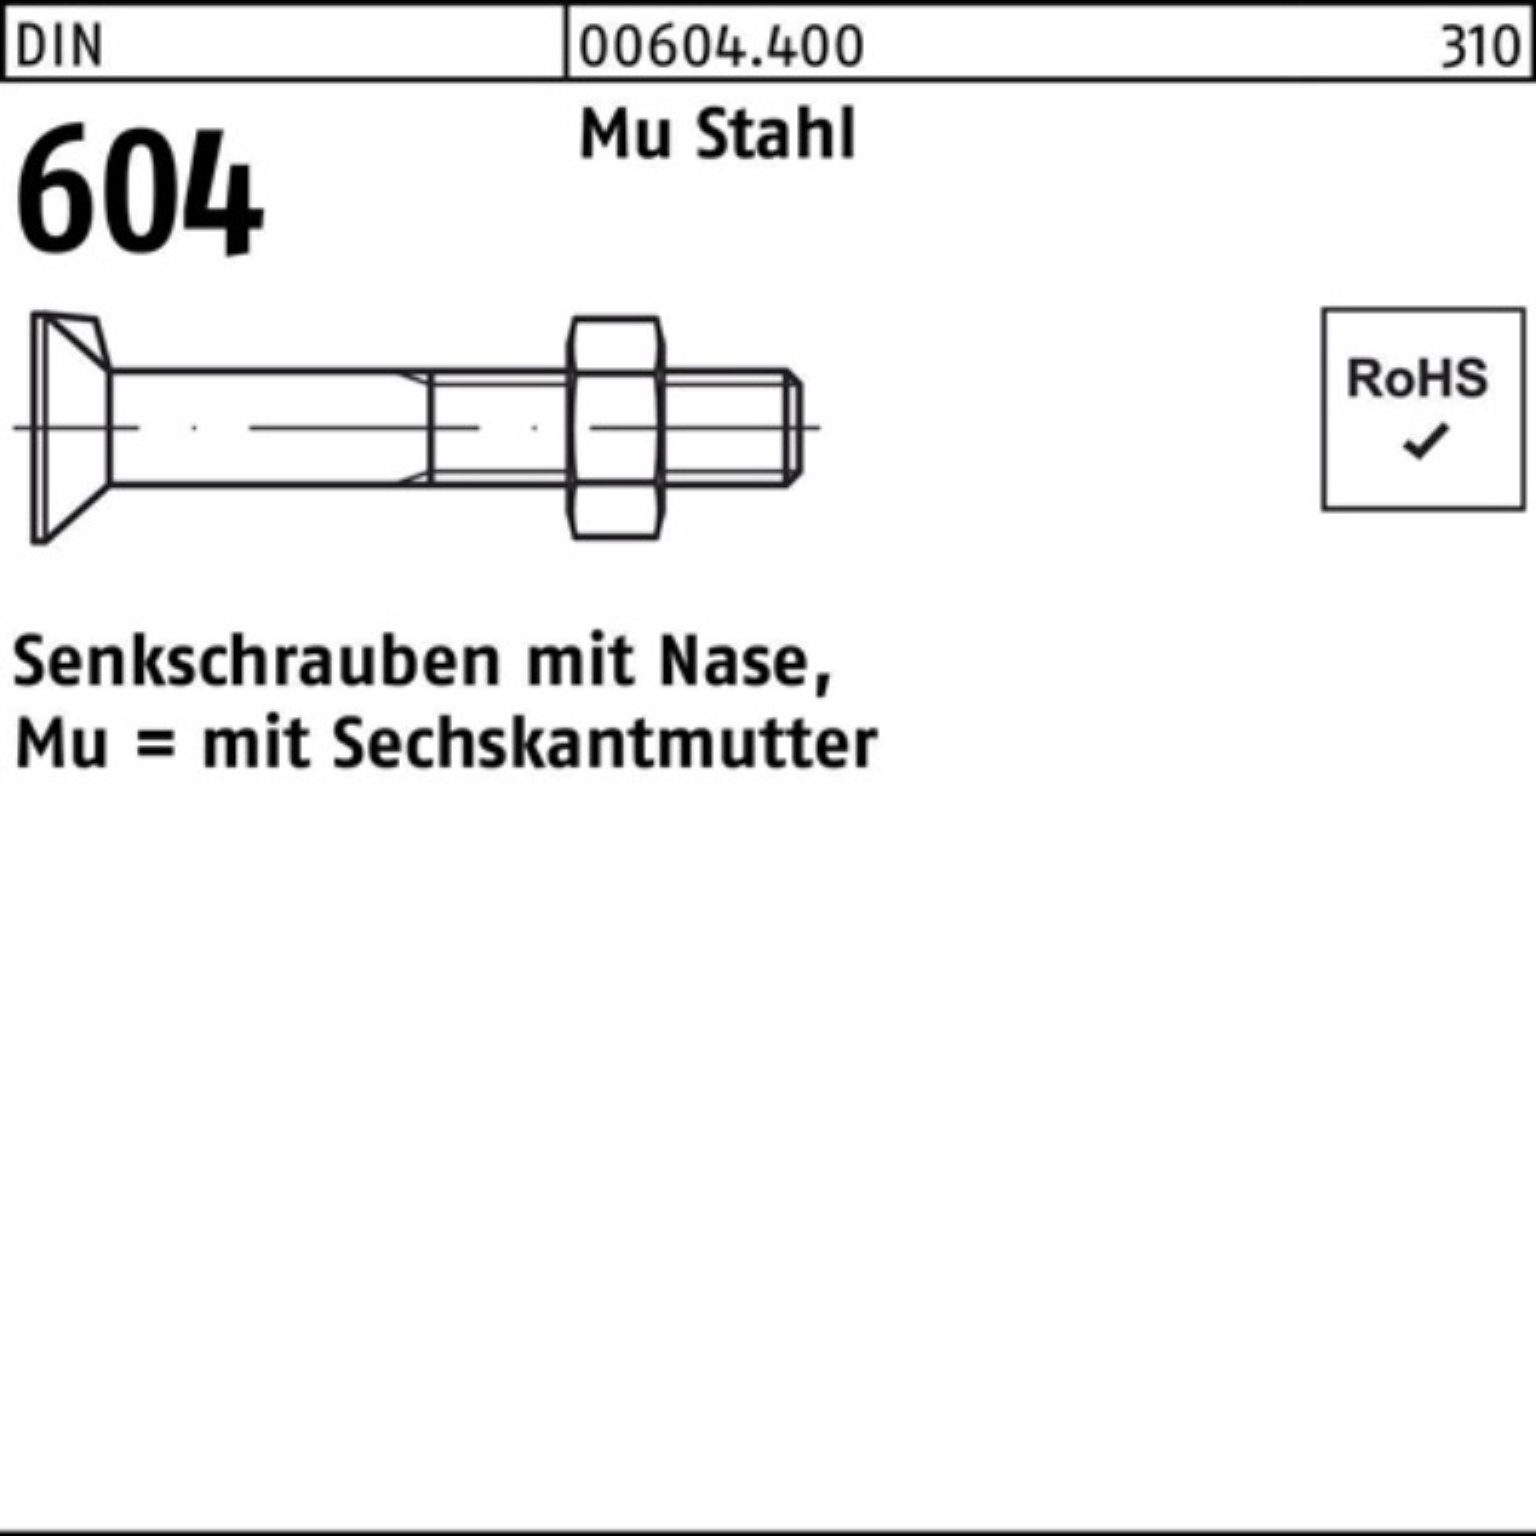 4.6 604 Stahl 90 Reyher Pack Senkschraube Nase/6-ktmutter DIN Mu 5 M12x Senkschraube 100er